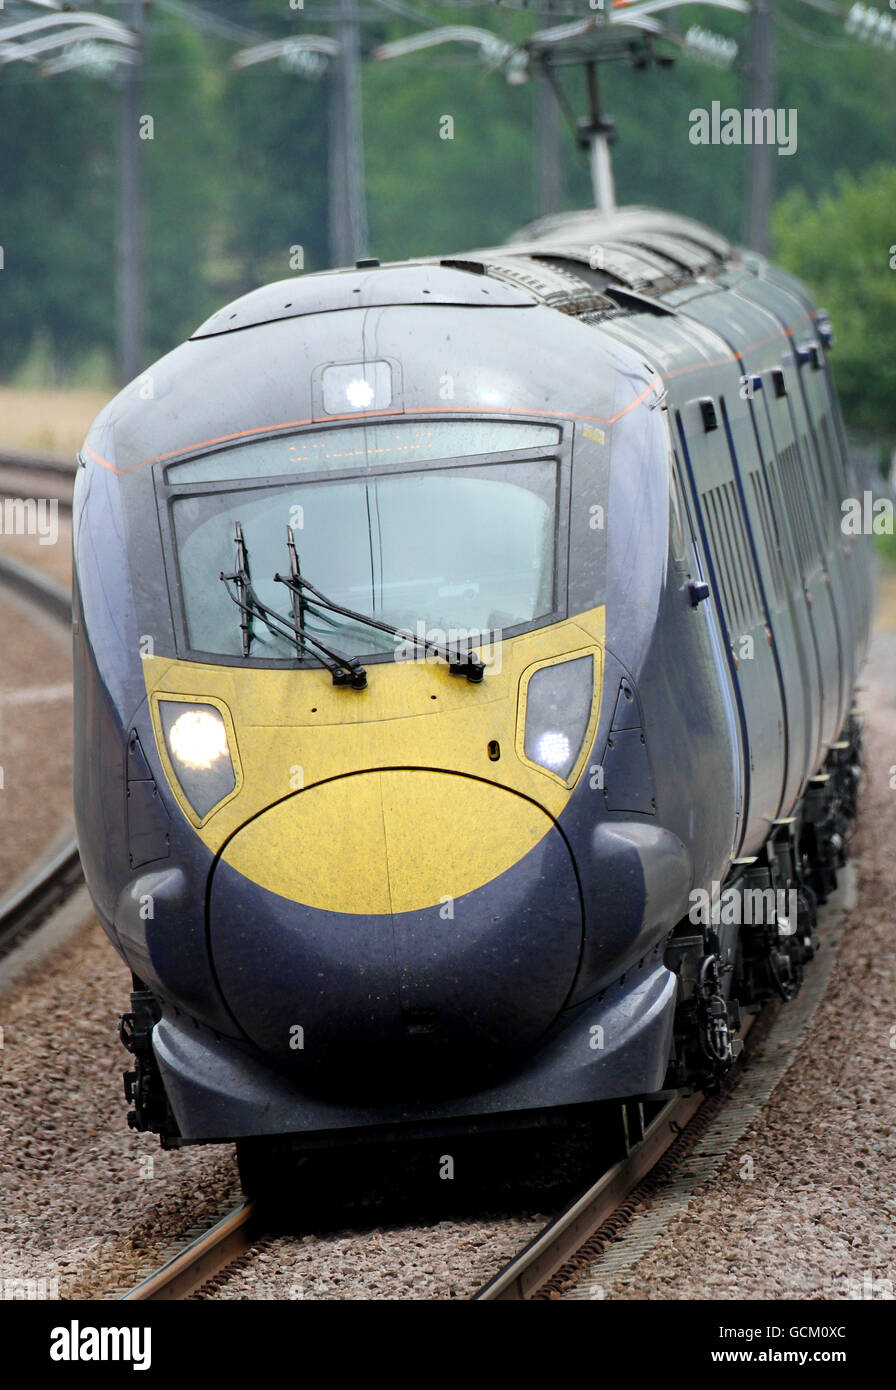 Vista general de un tren Javelin clase 395 de Hitachi que se dirige hacia Londres en el enlace ferroviario del túnel de alta velocidad de 1 canales cerca de Charing, Kent. Foto de stock